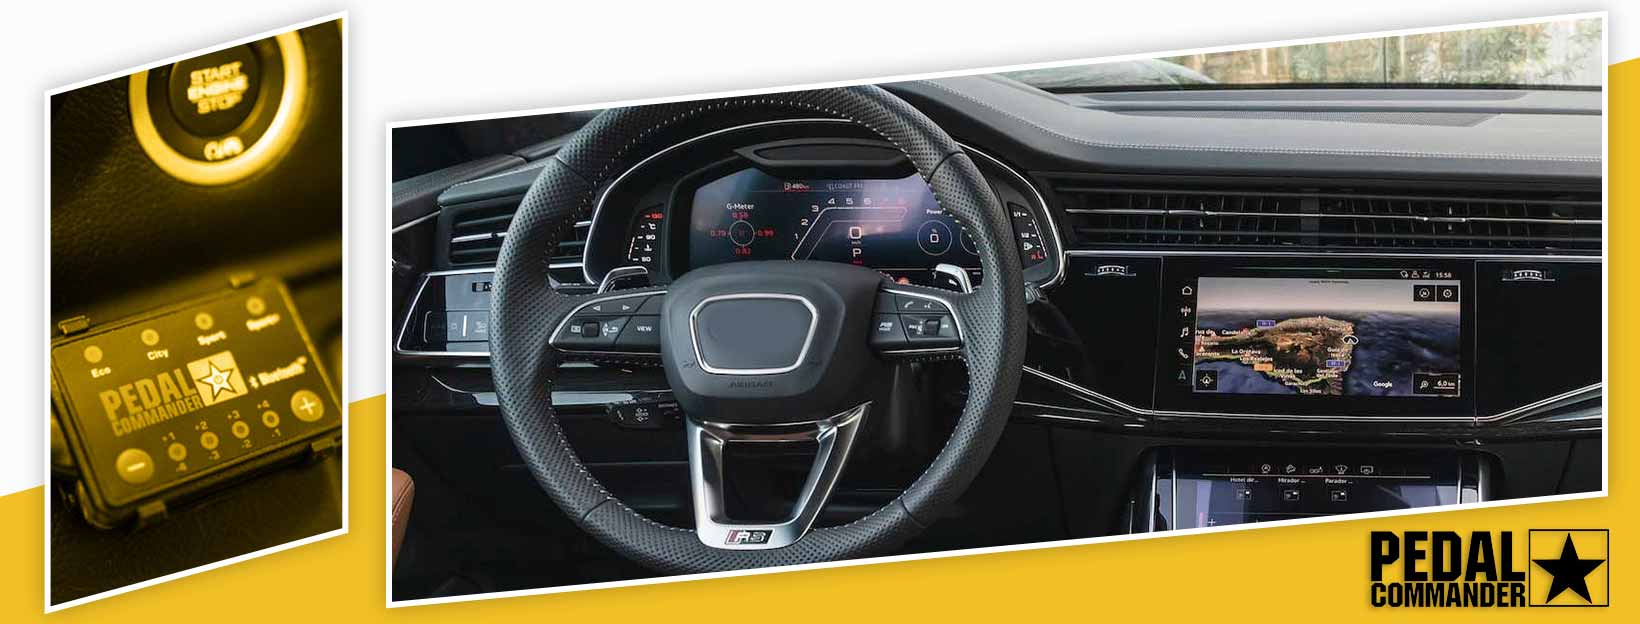 Pedal Commander for Audi Q8 - interior